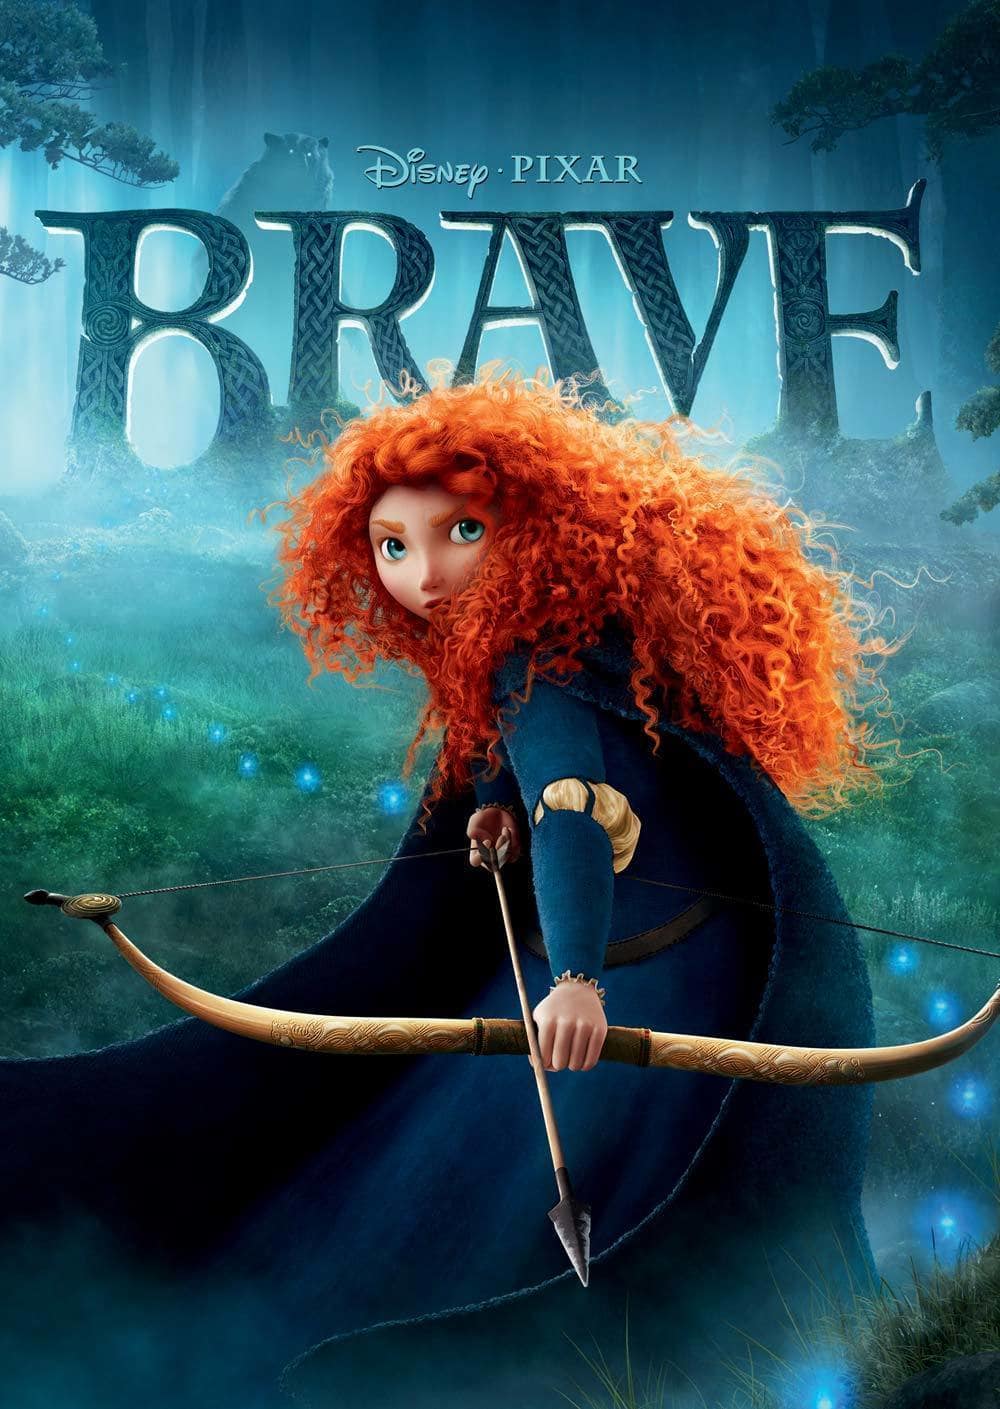 Disney Pixar Brave Logo - Disney•Pixar Brave: The Video Game